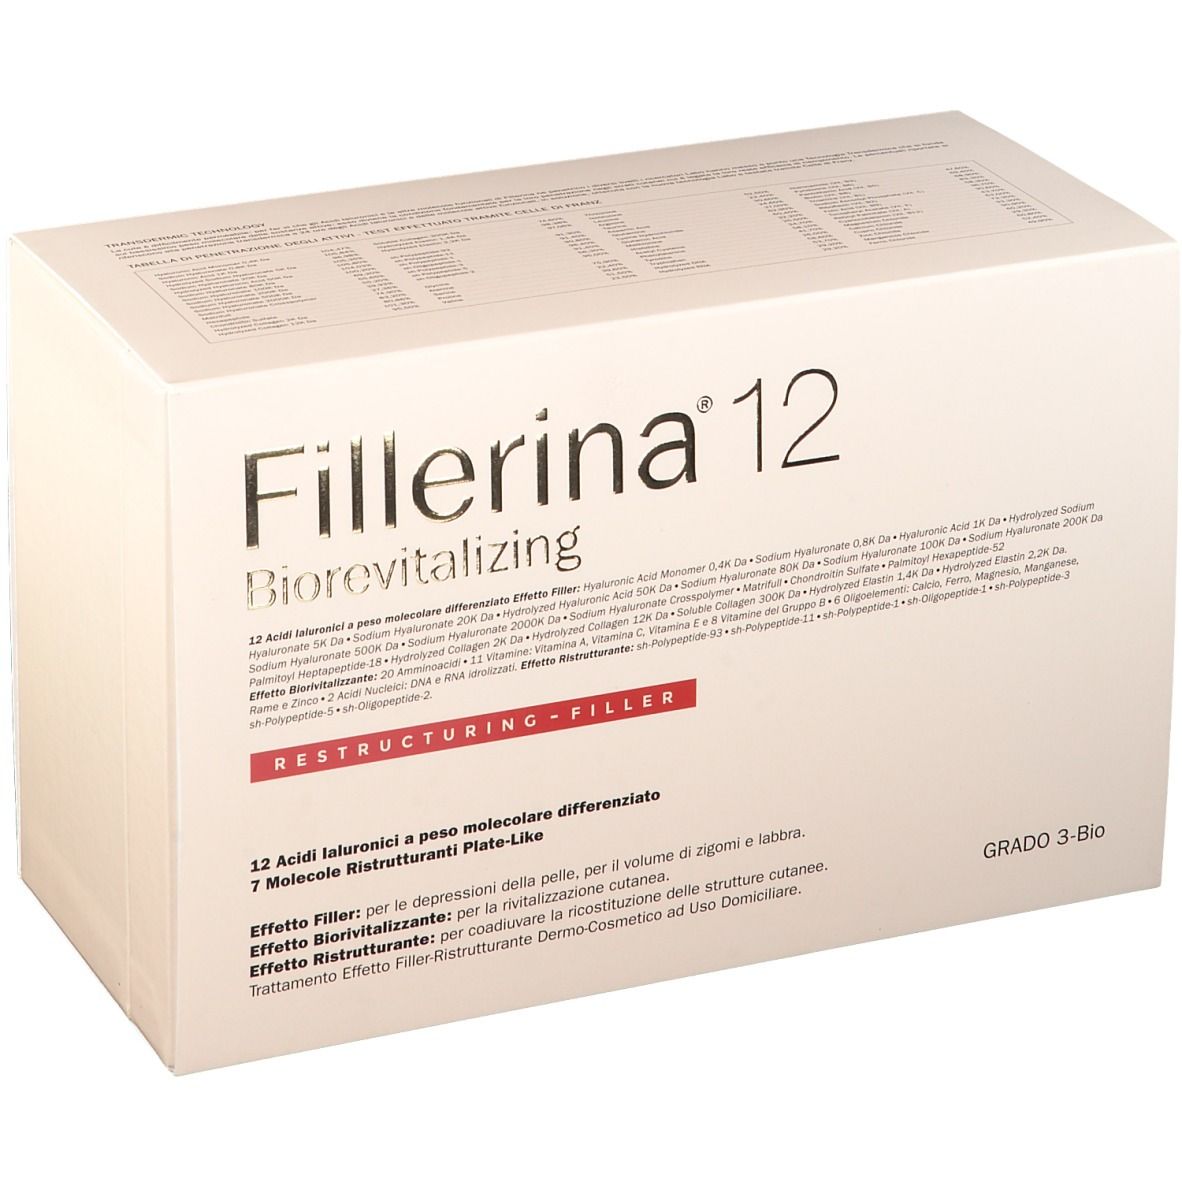 Image of Fillerina® 12 Biorevitalizing Restructuring Filler Grad 3